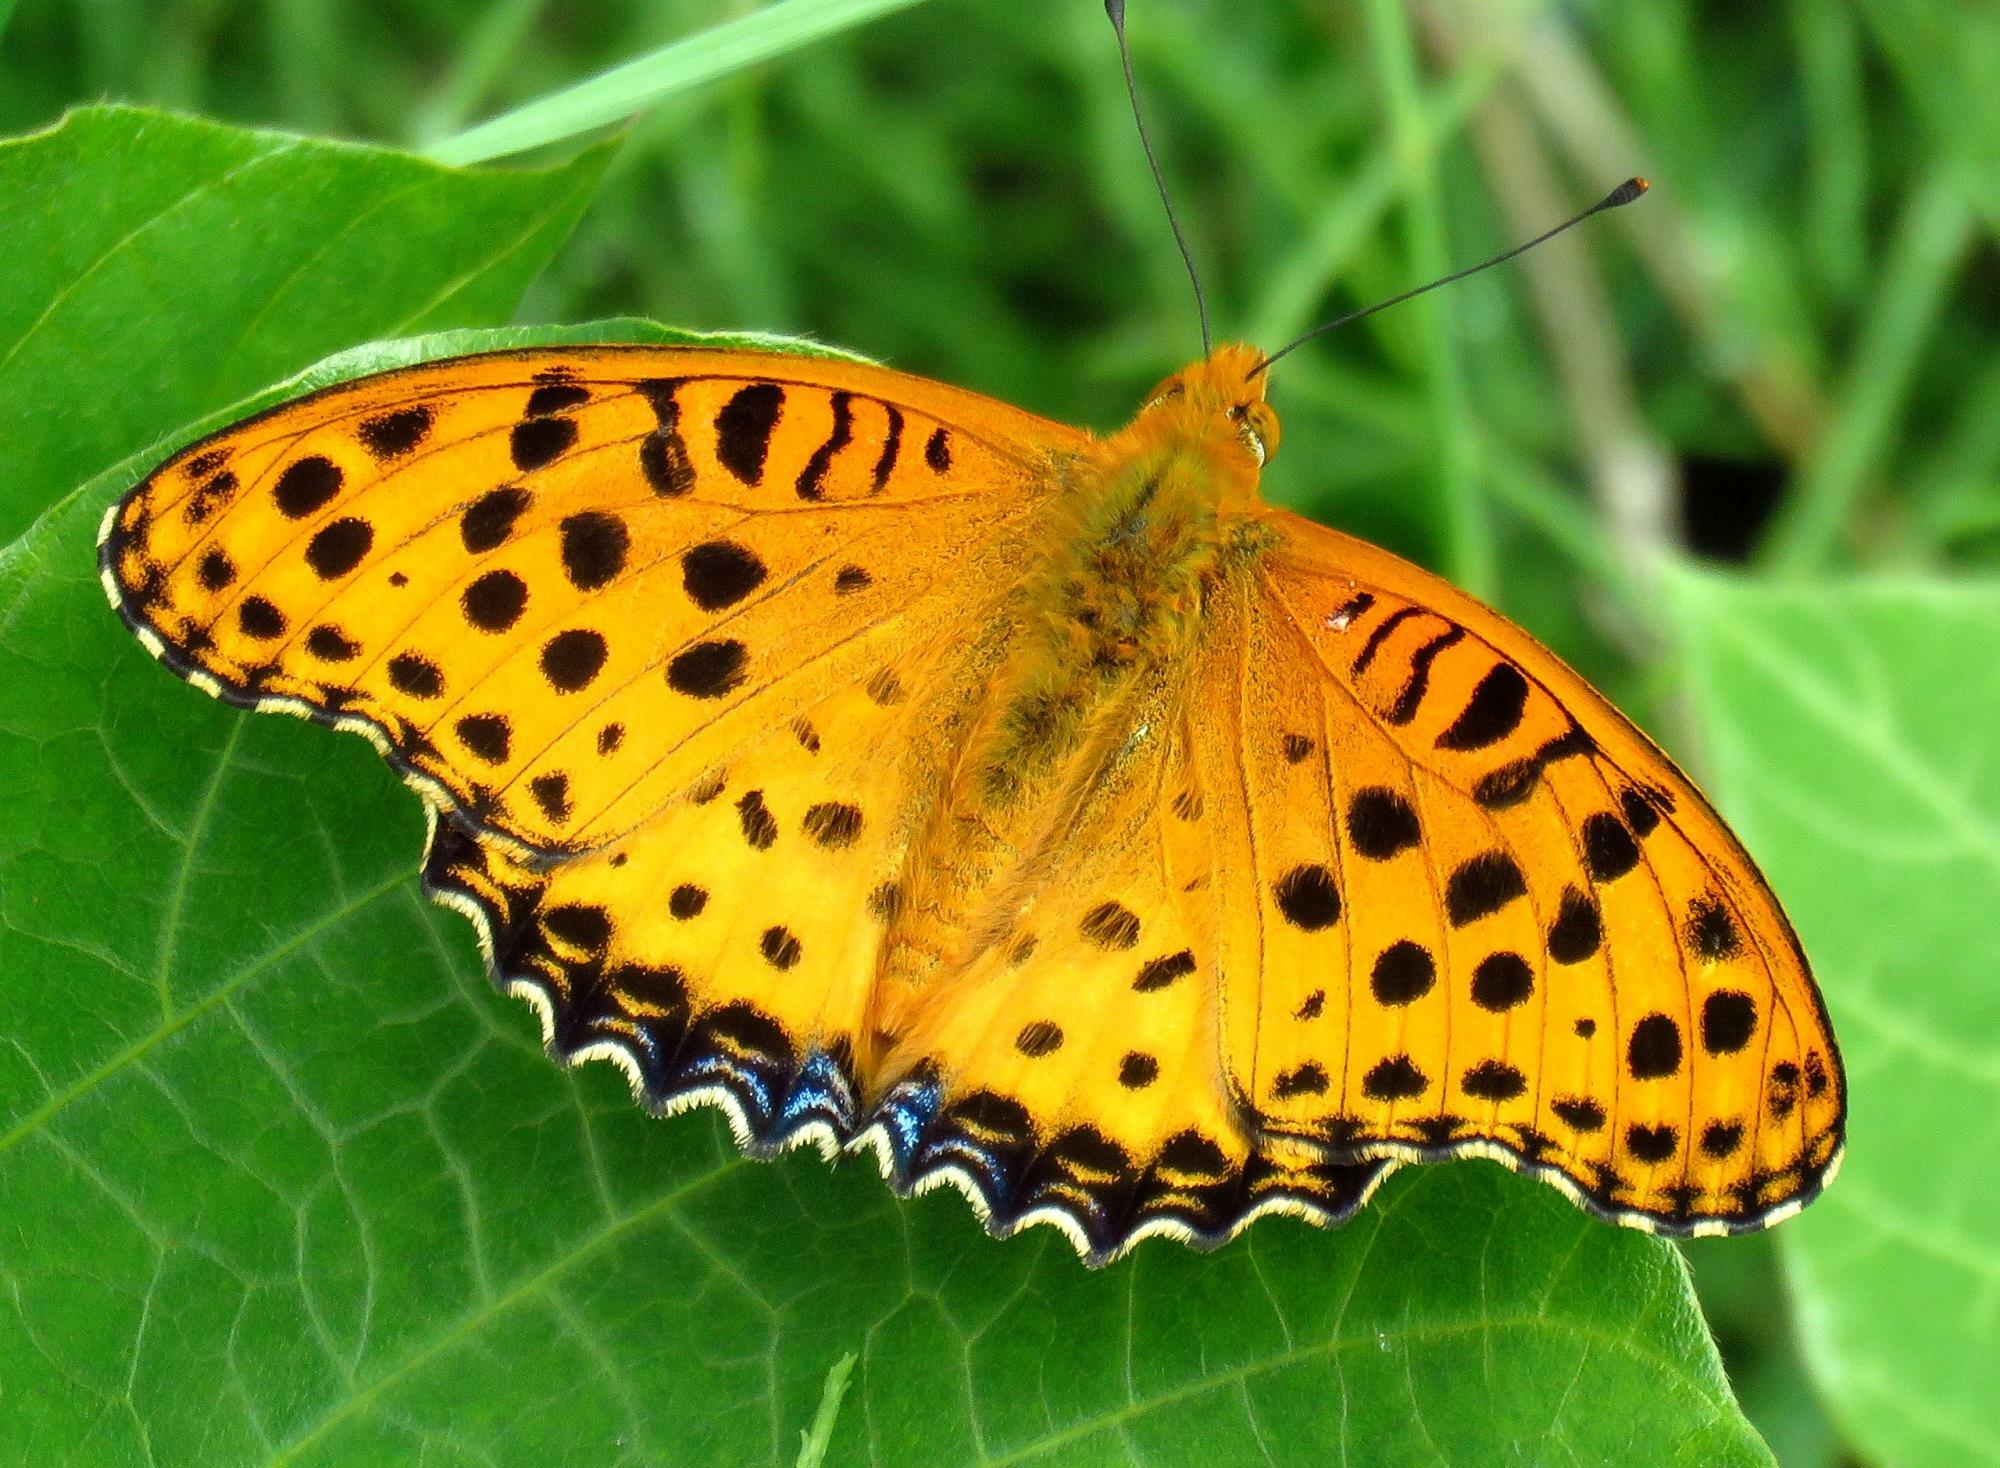 ツマグロヒョウモンのオスはちょっと地味。オスメスの違いが目立つ蝶の代表でもある。